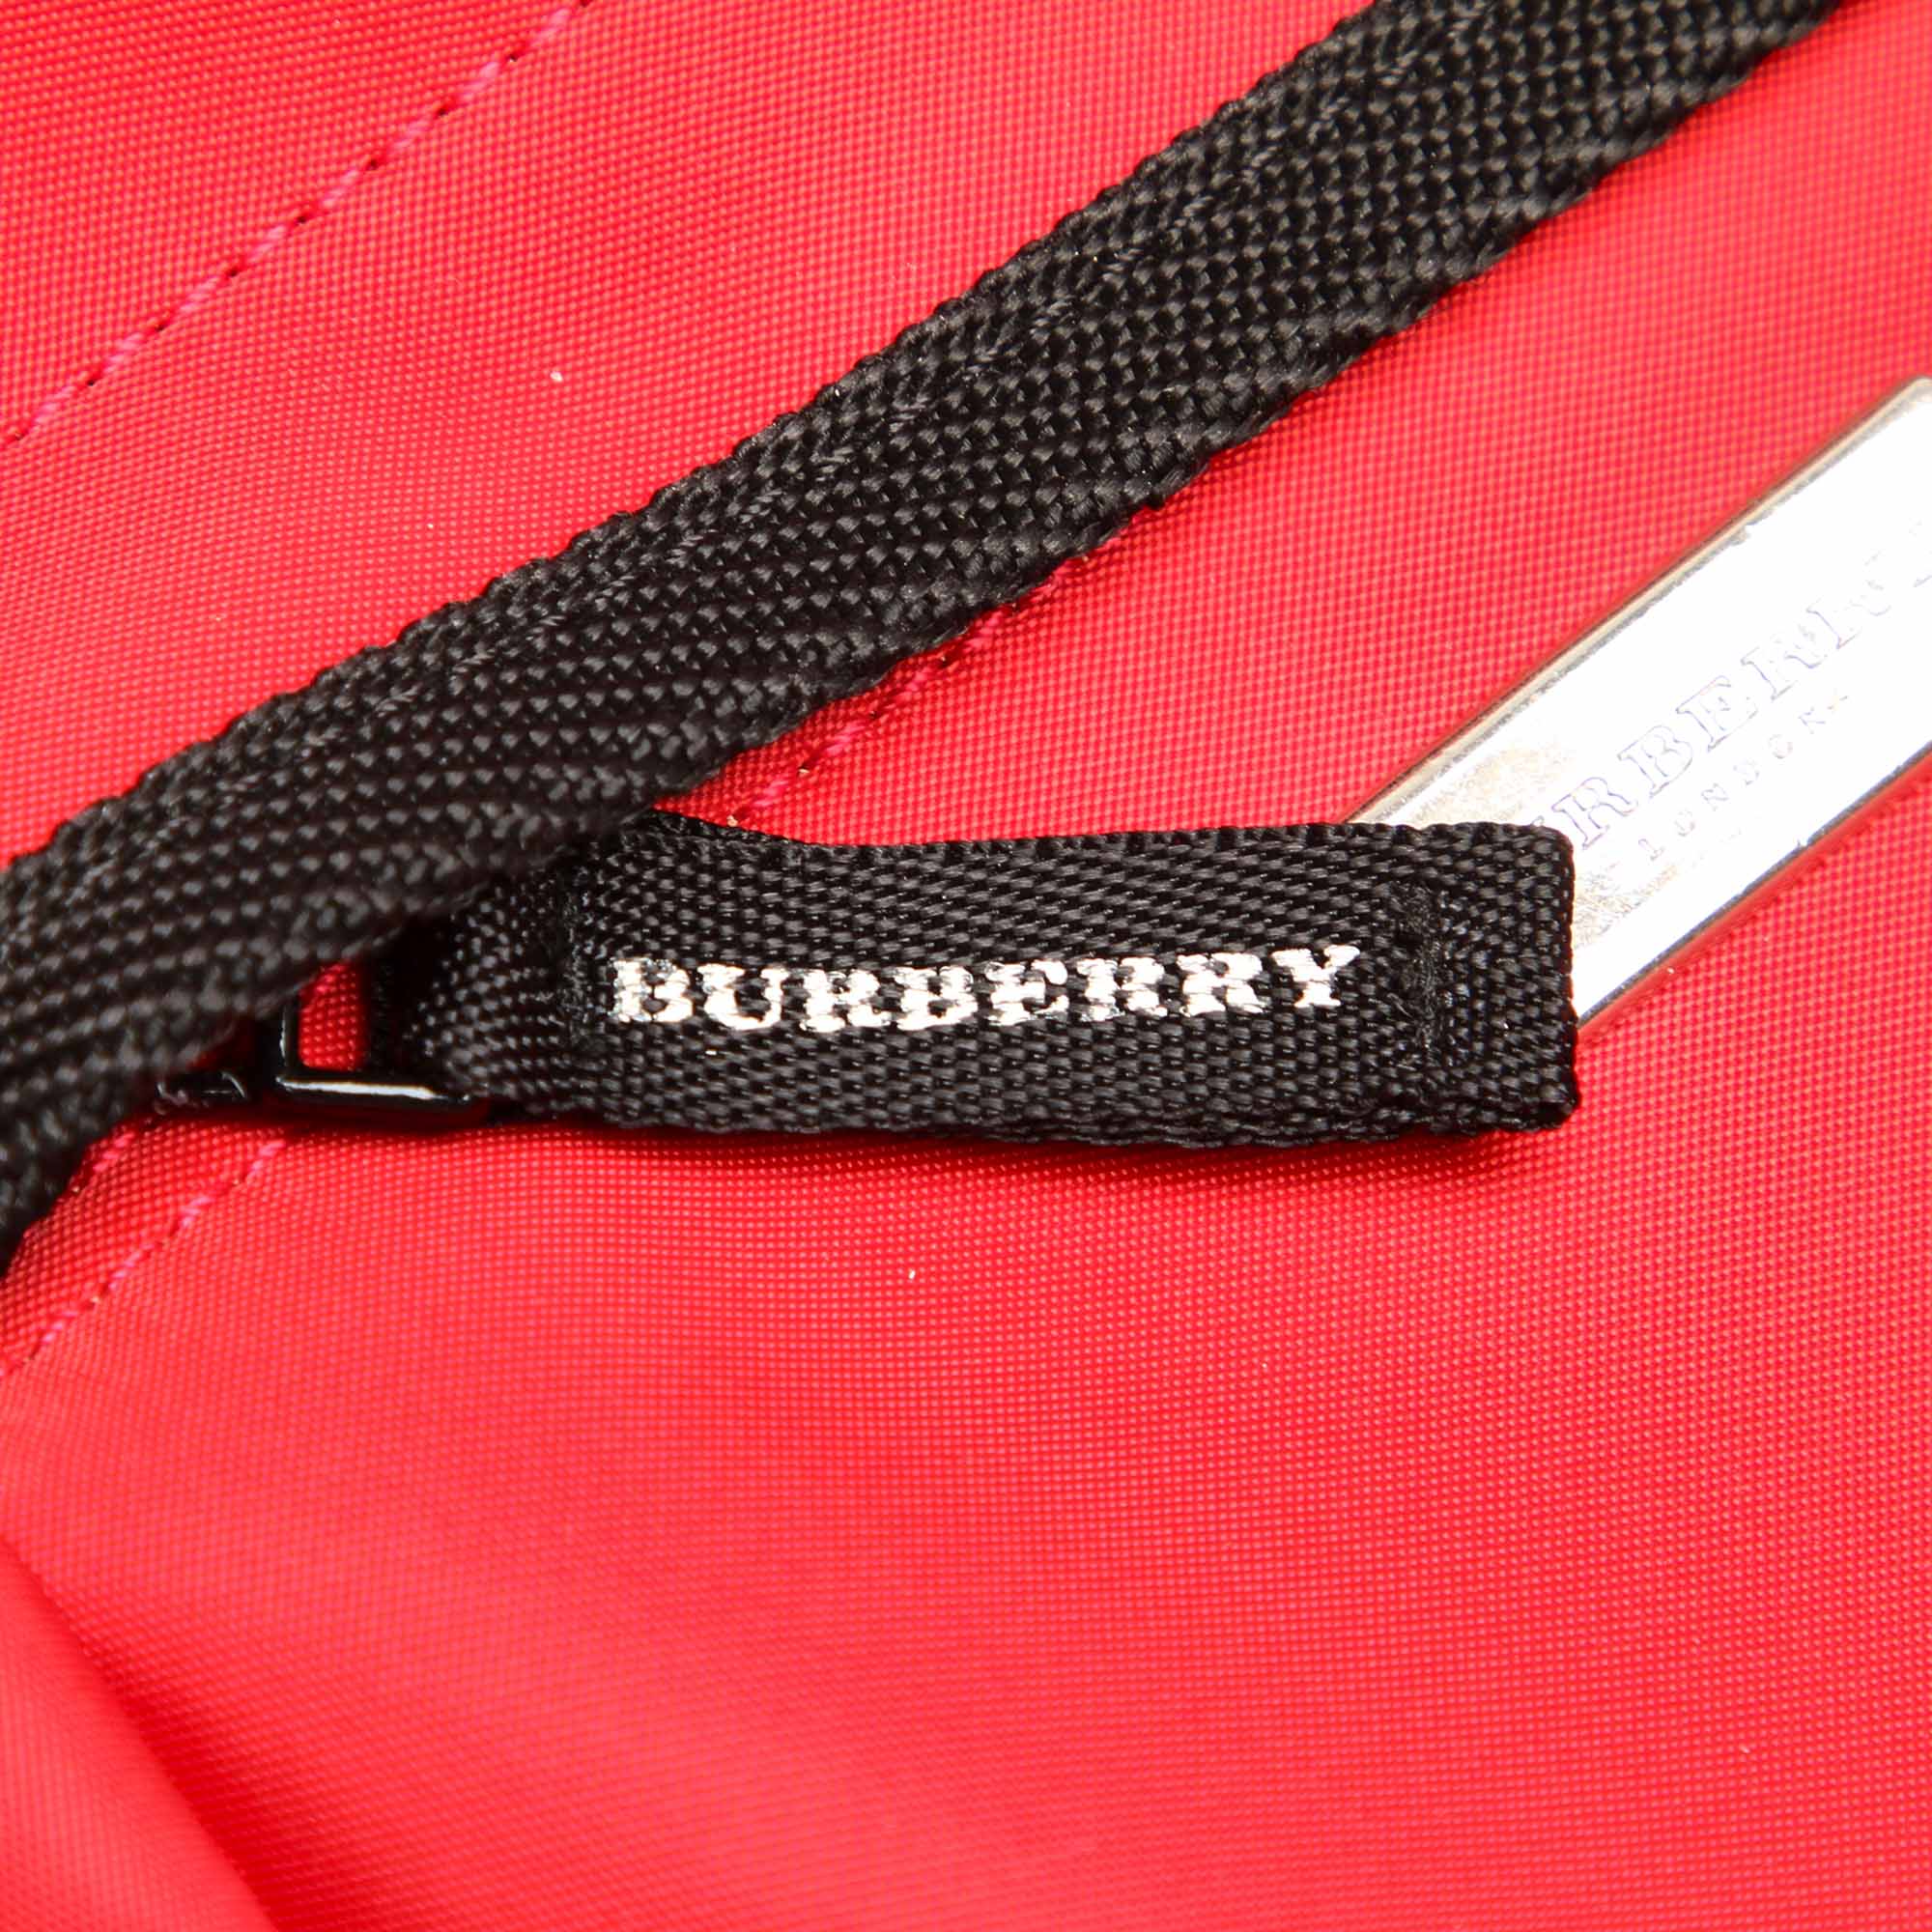 Burberry Red Nova Check Leather Crossbody Bag